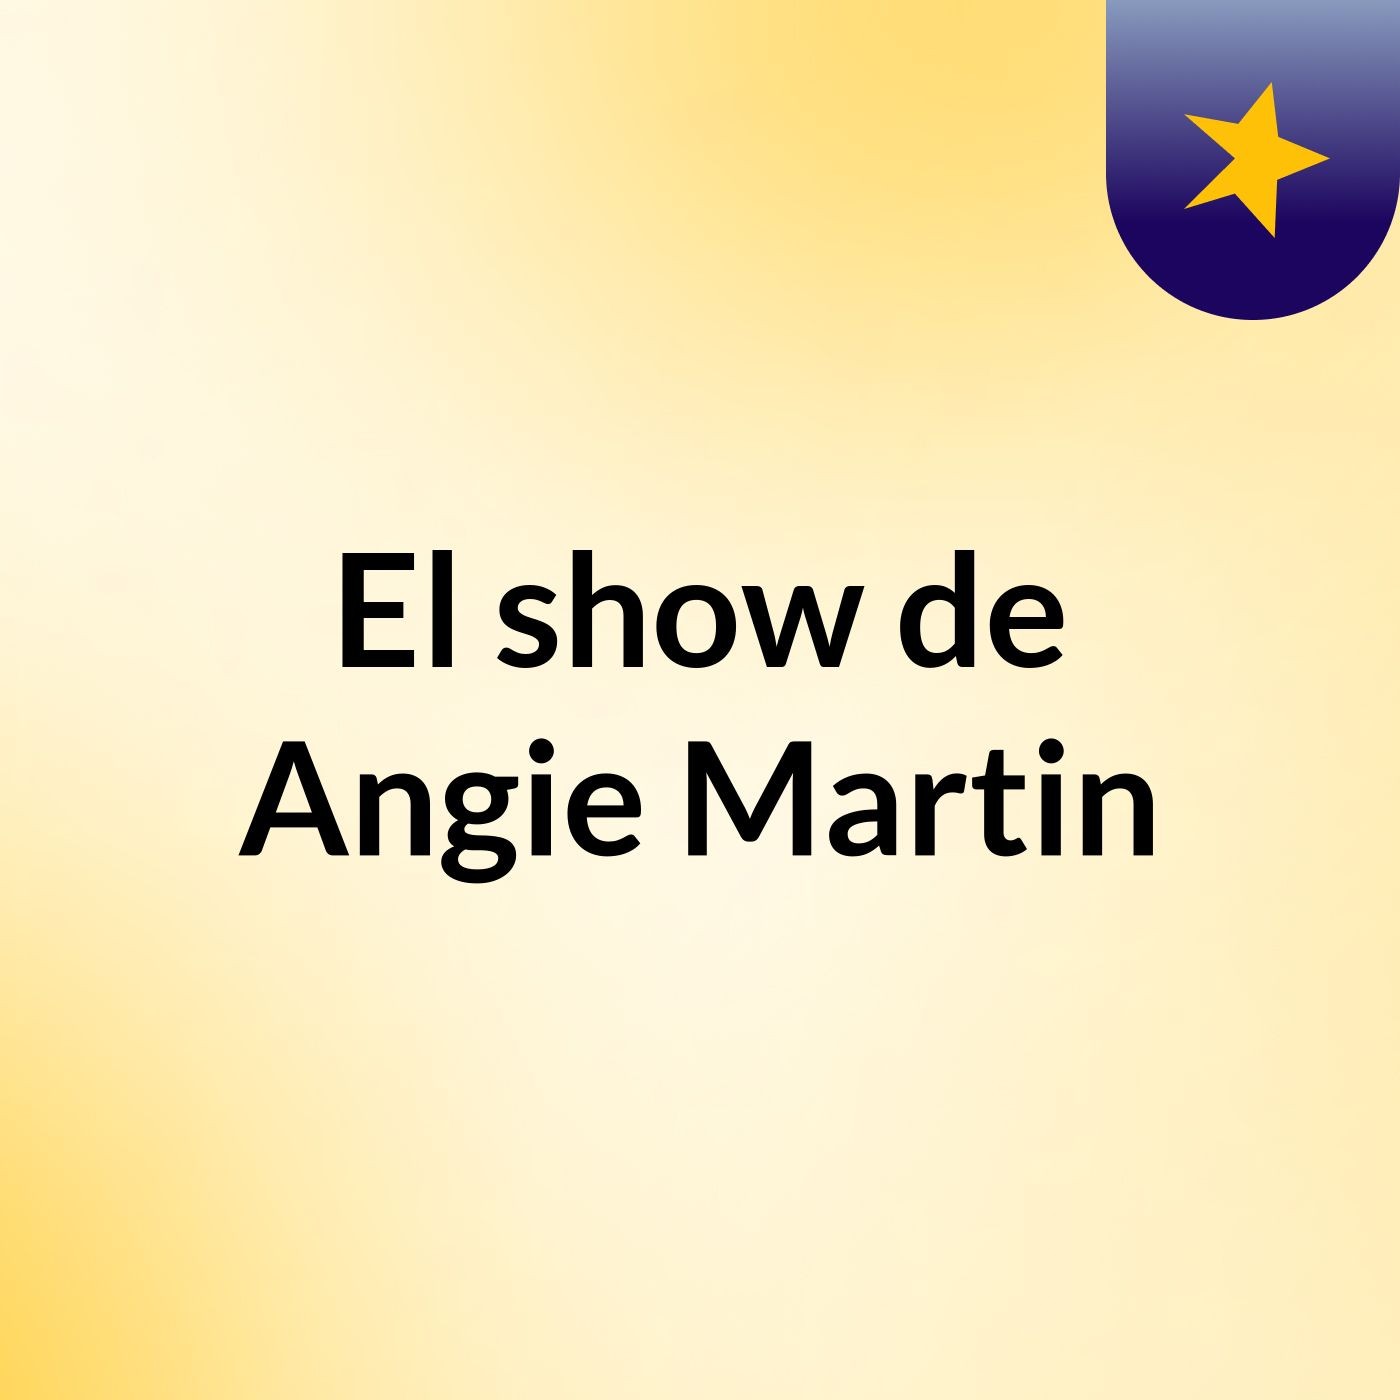 El show de Angie Martin